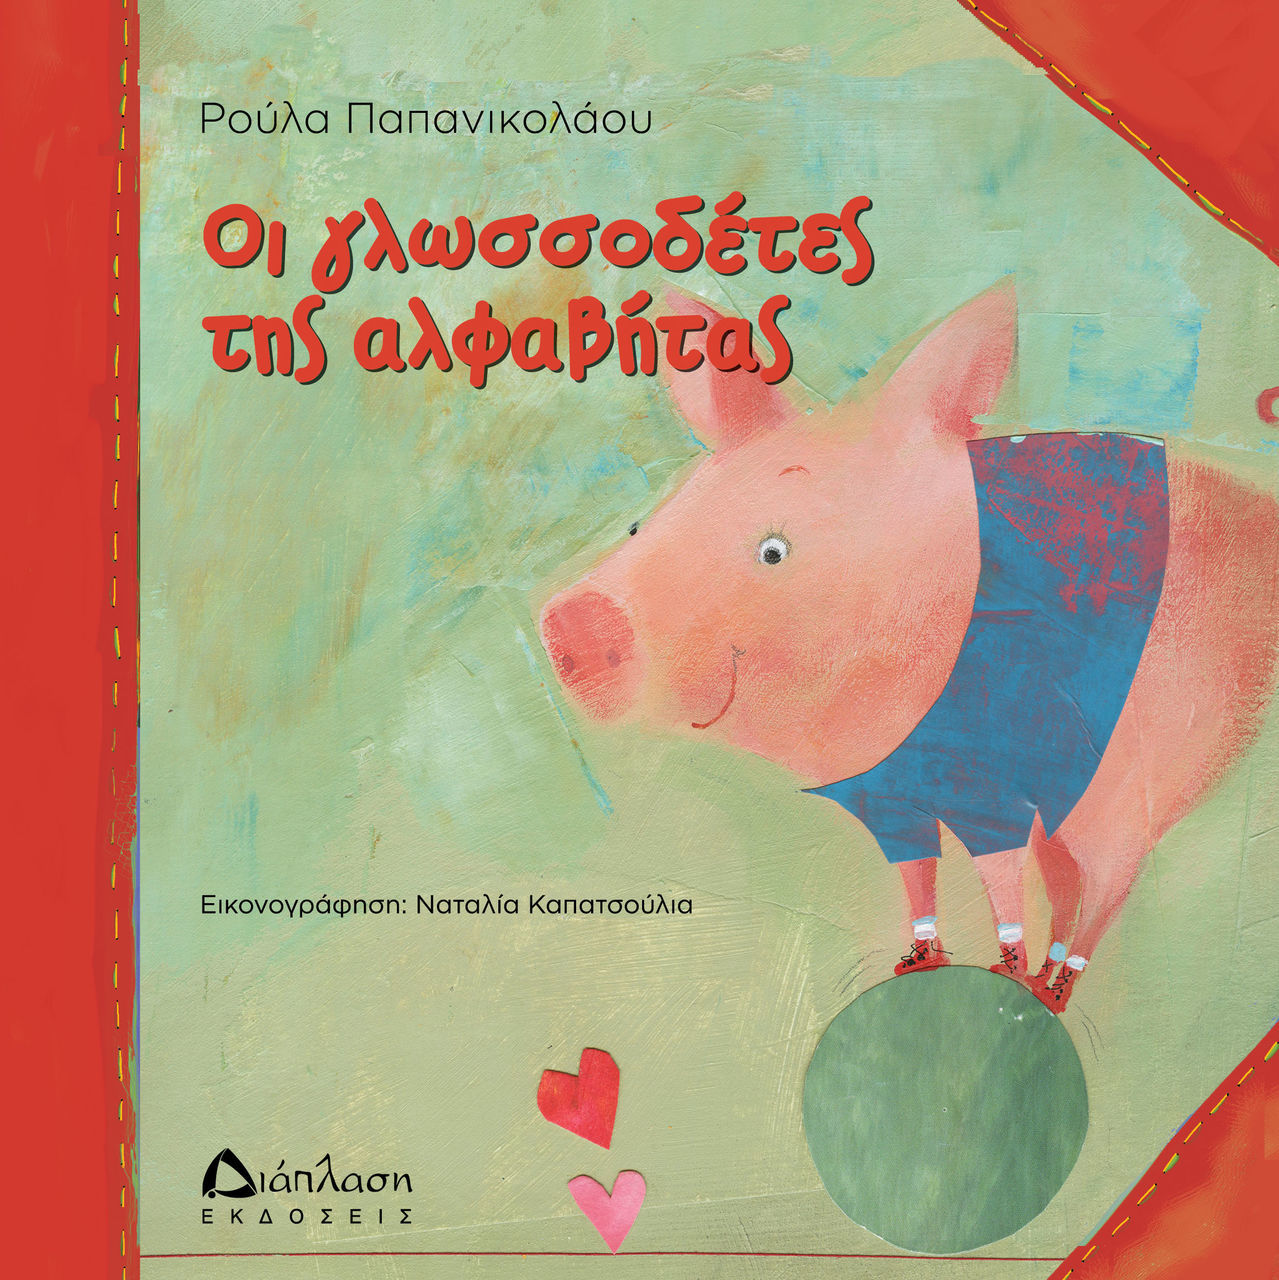 Δύο νέα βιβλία κυκλοφορούν από τις "Εκδόσεις Διάπλαση" για τα παιδιά προσχολικής και πρωτοσχολικής ηλικίας